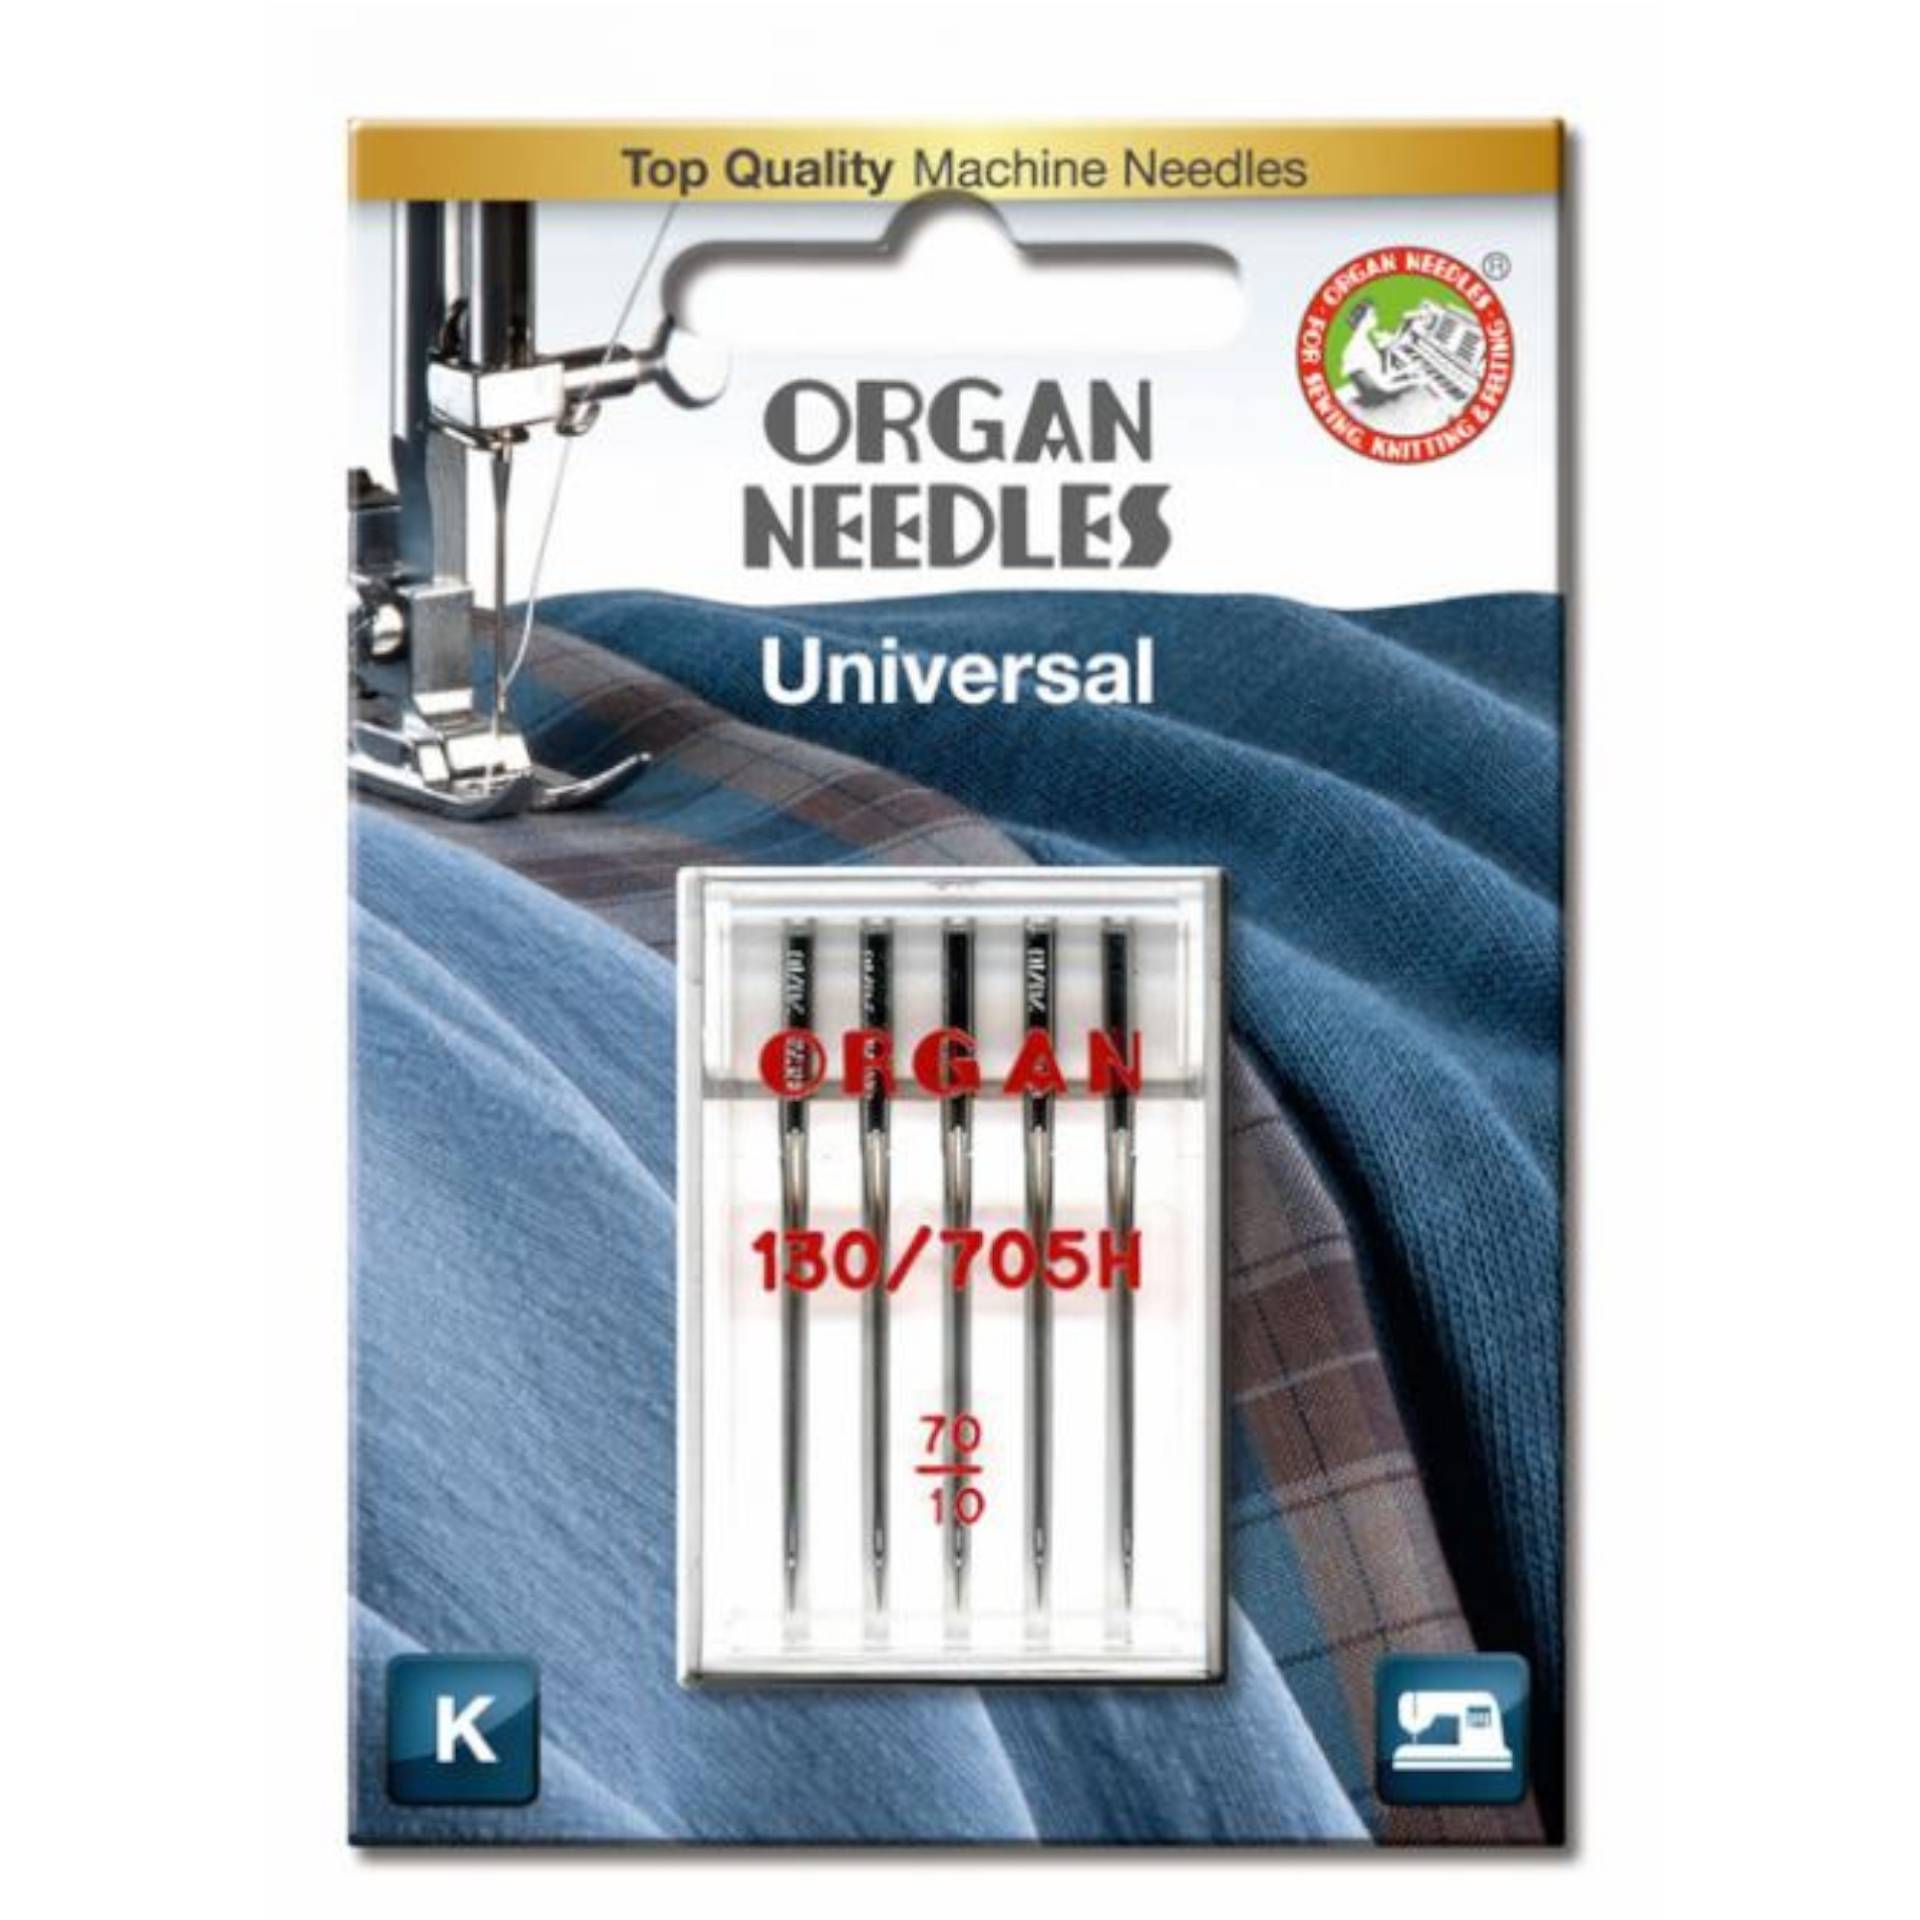 5 Organ Nähmaschinennadeln 130/705 H, Universal 70 von Stoffe Hemmers